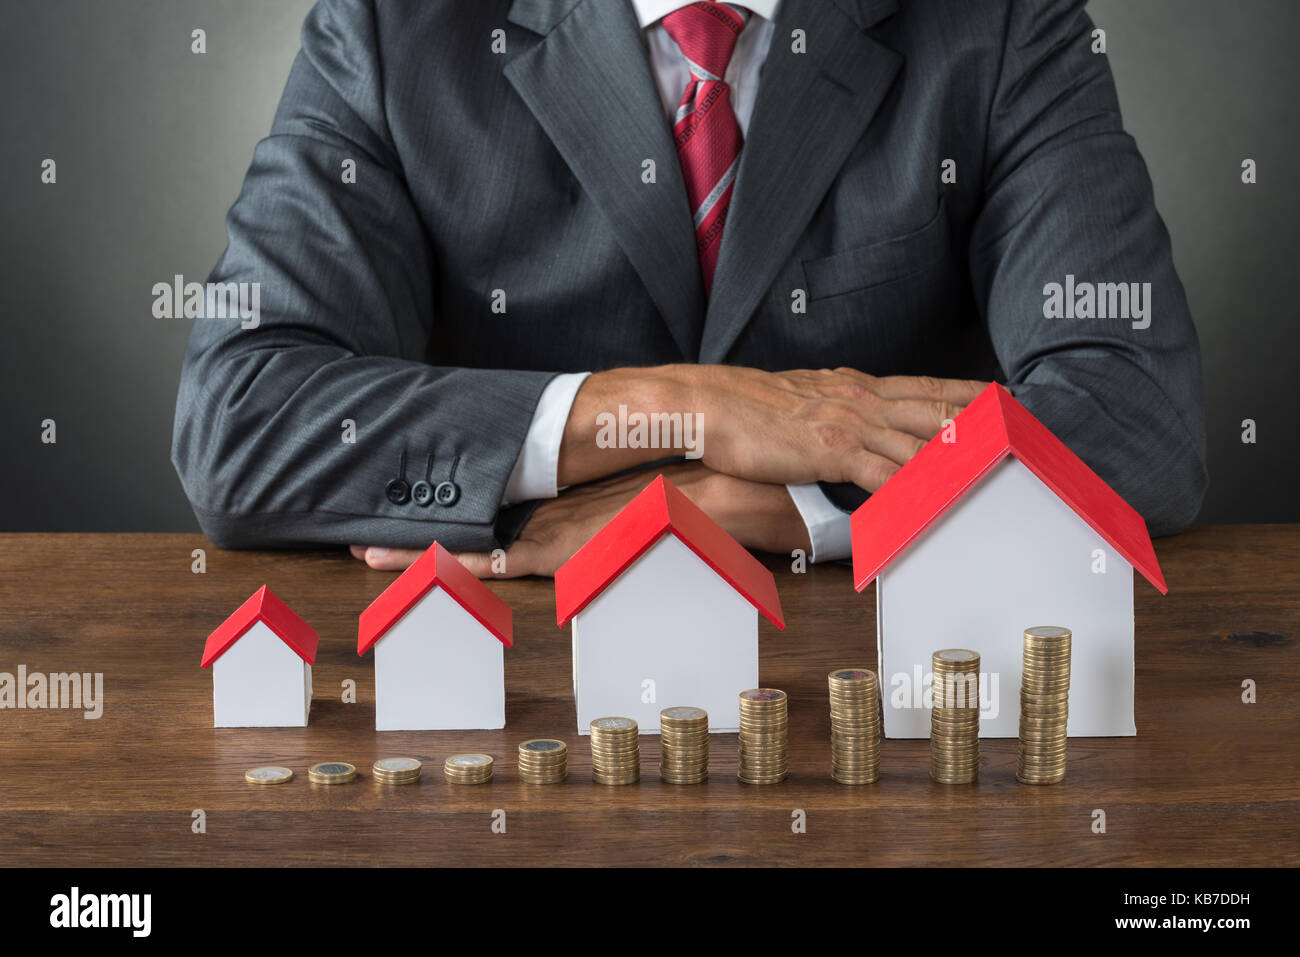 Portrait of businessman avec différentes tailles de maisons et des piles de jetons sur le tableau Banque D'Images